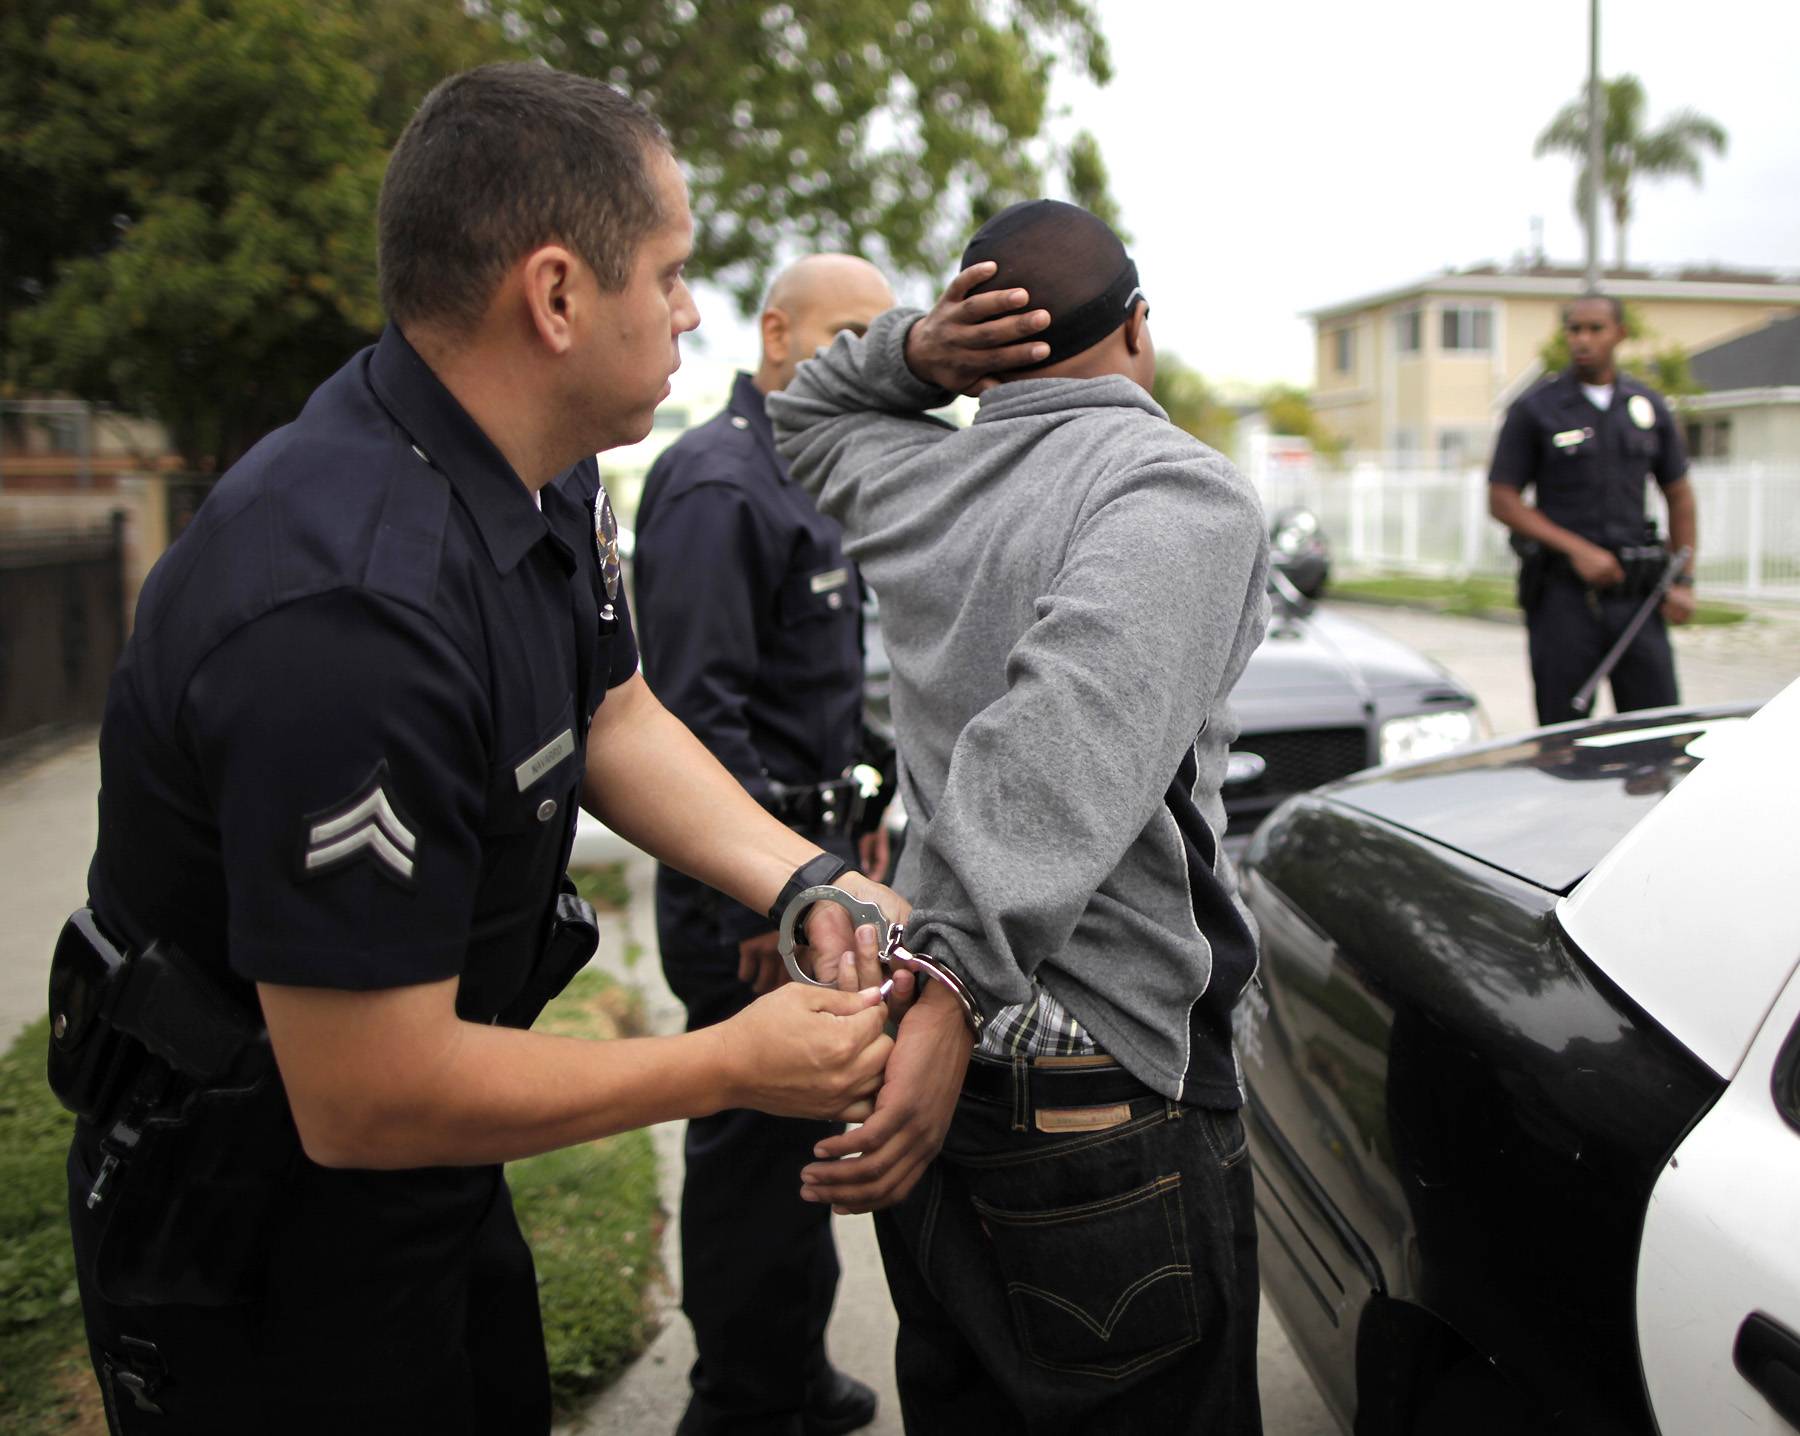 More Marijuana Arrests Than Violent Crime Arrests